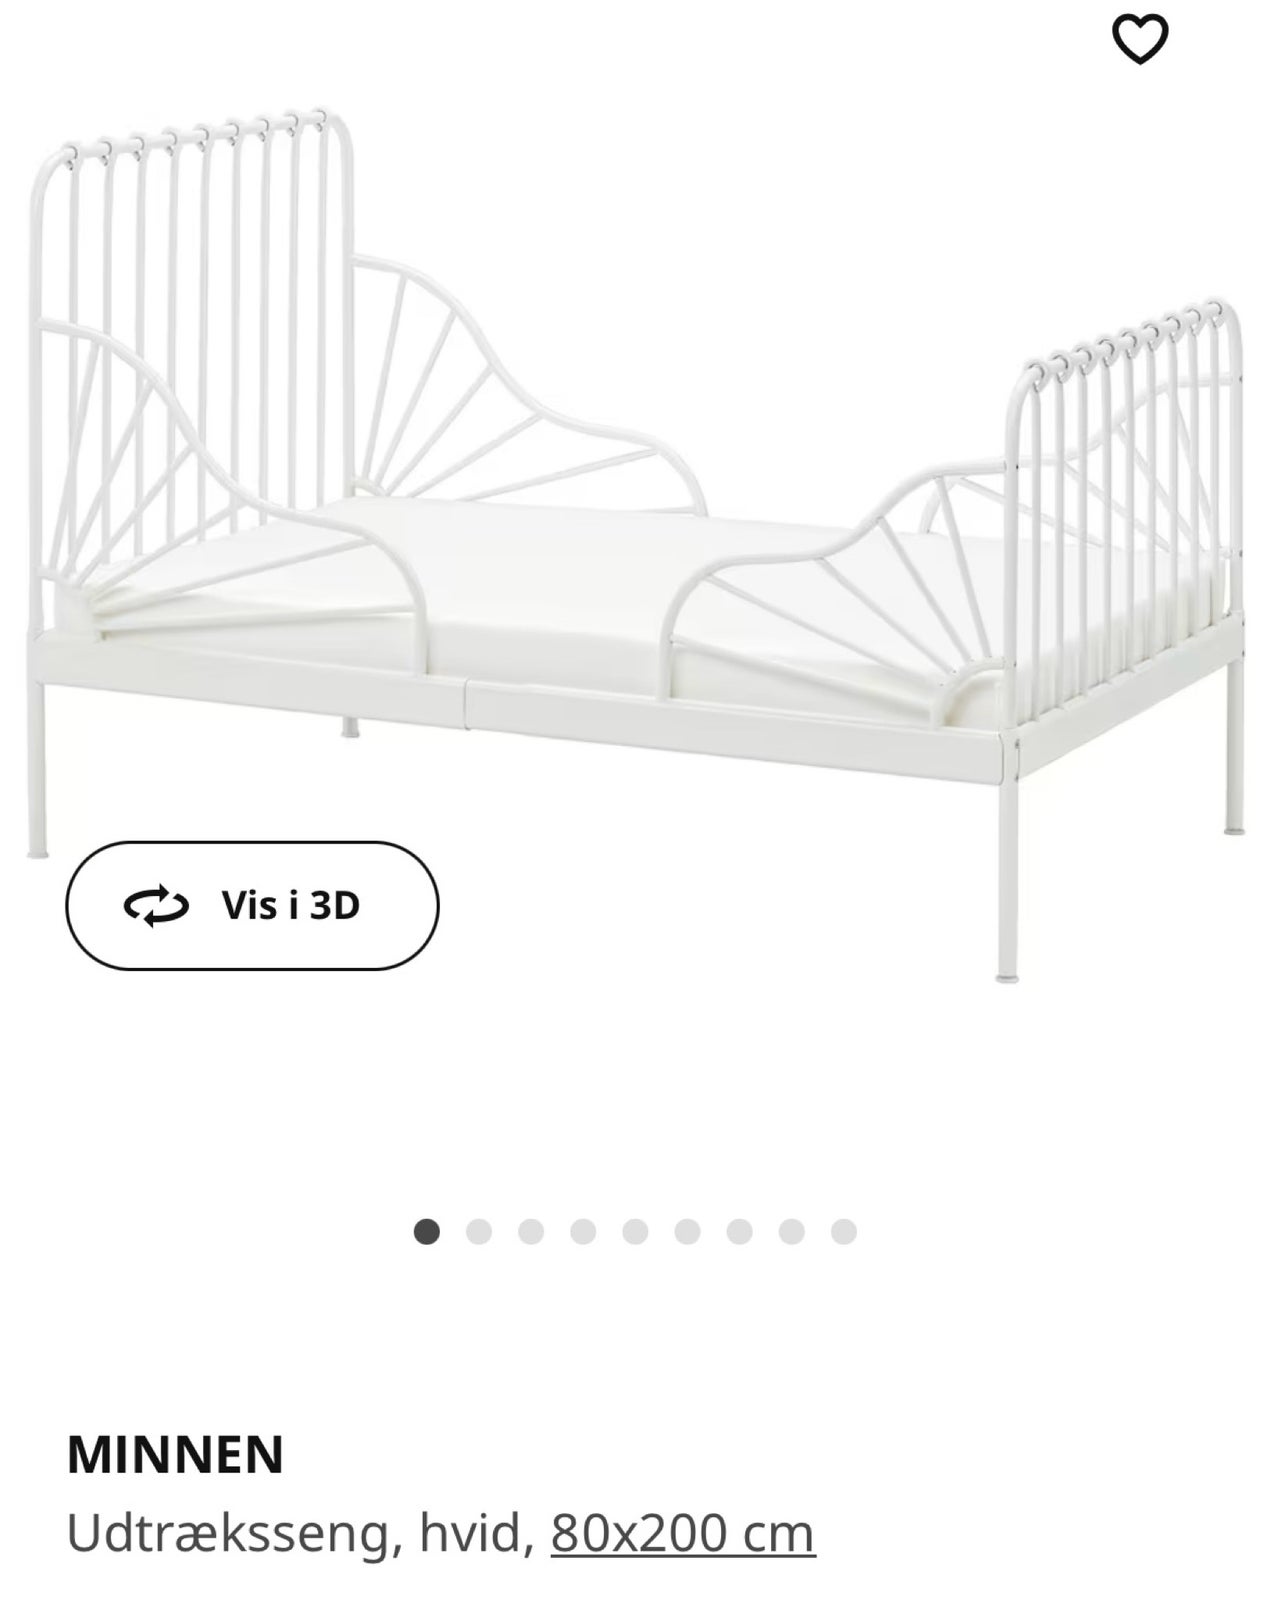 Halvhøj seng, Minnen udtræksseng fra Ikea i metal